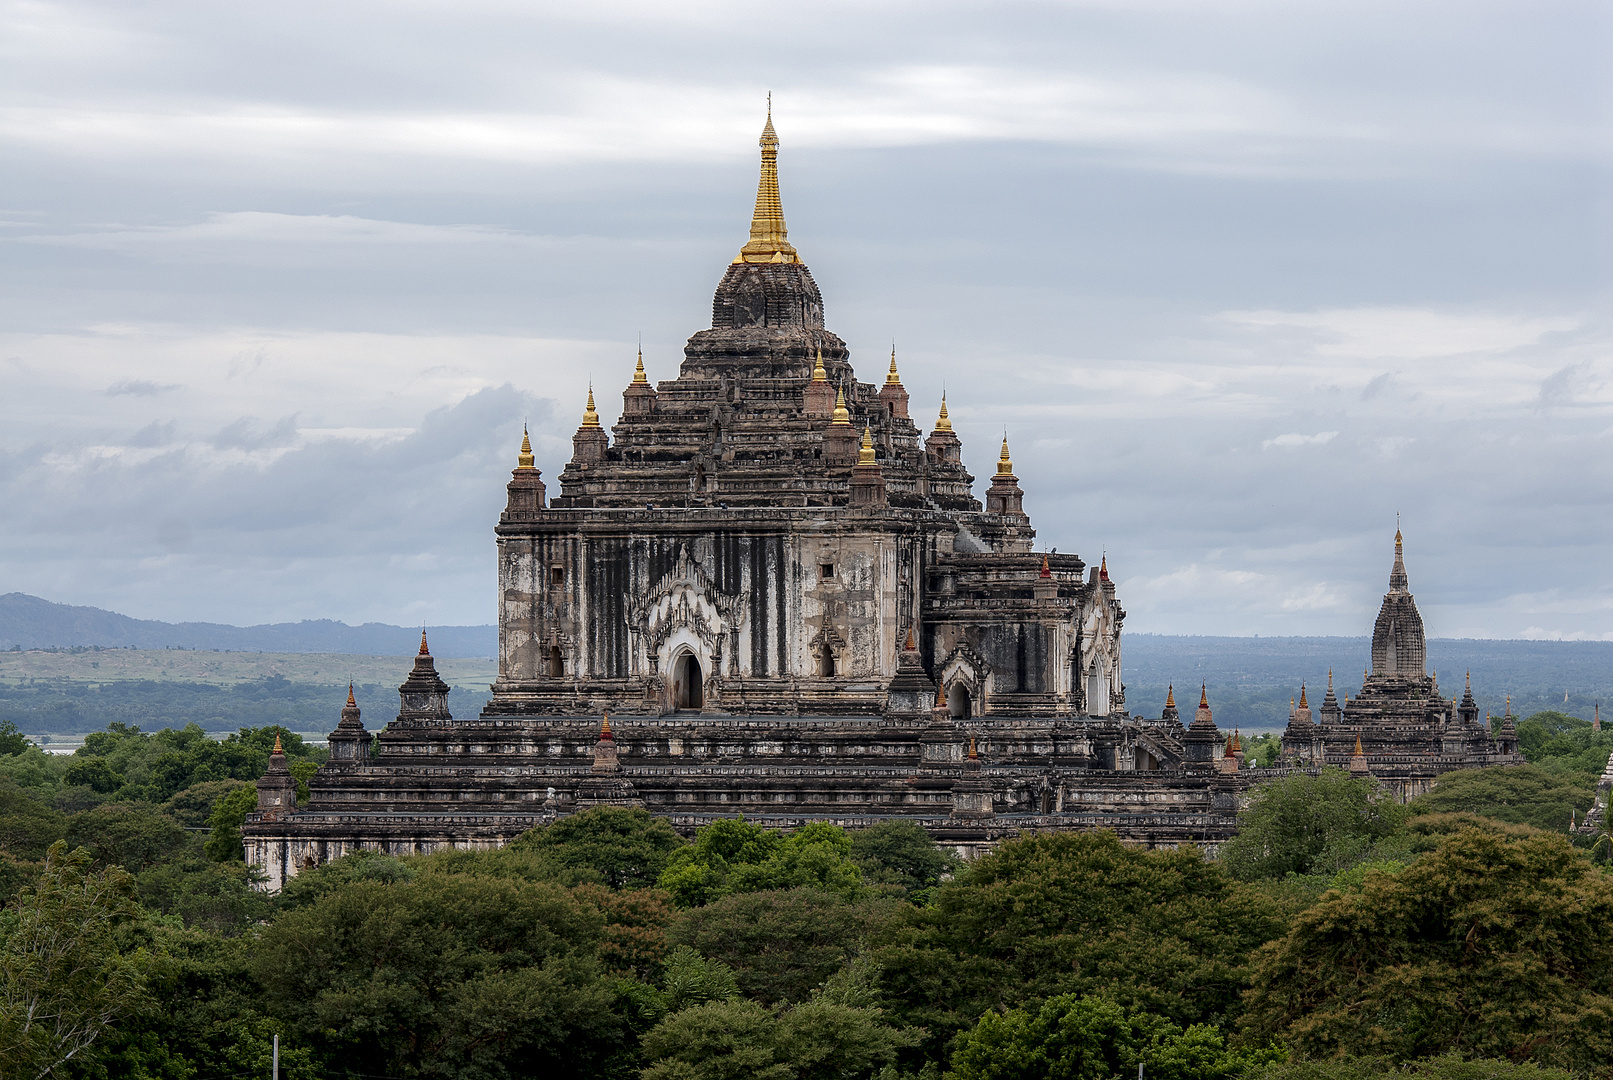 Thatbyinnyu Temple in Bagan